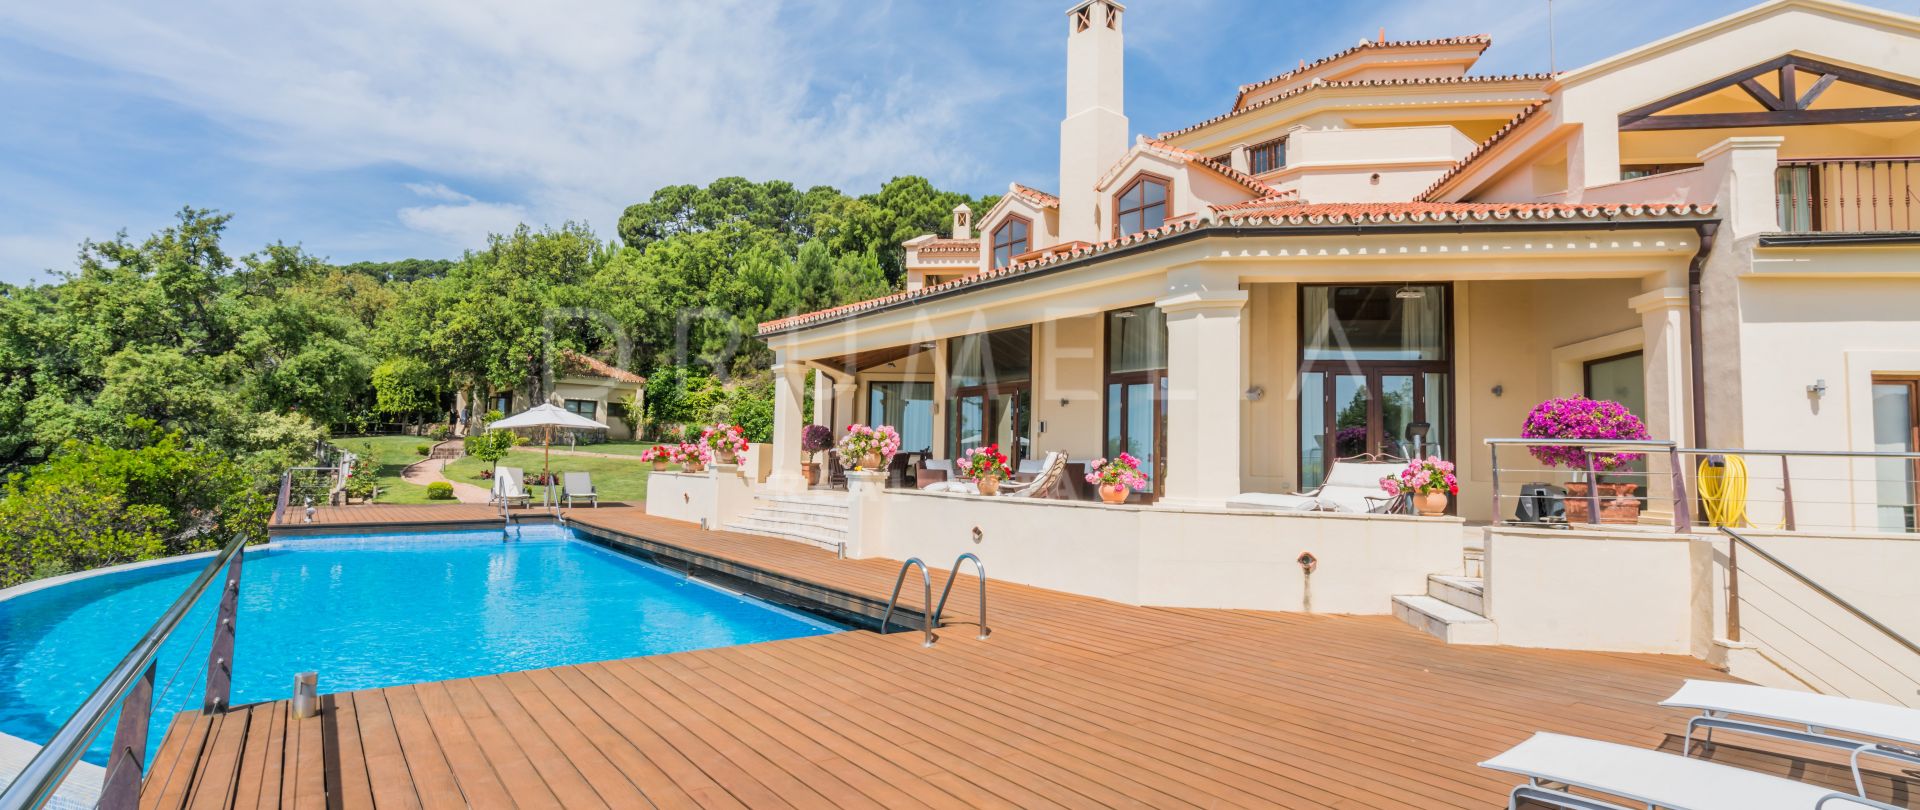 Betoverende mediterrane luxe villa in Zagaleta